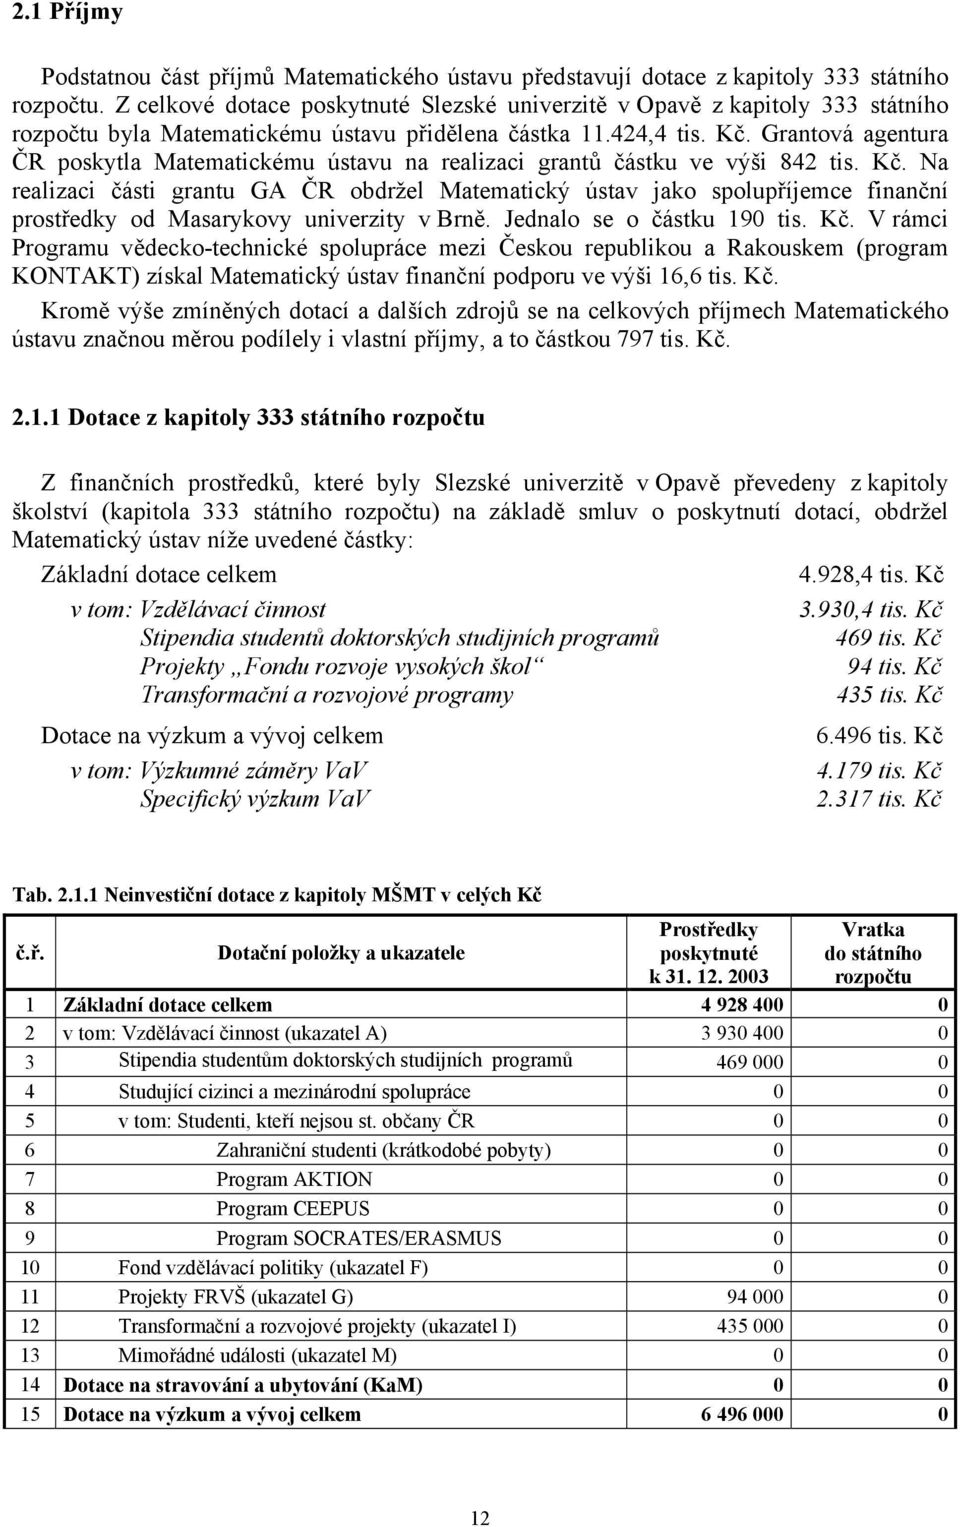 Grantová agentura ČR poskytla Matematickému ústavu na realizaci grantů částku ve výši 842 tis. Kč.